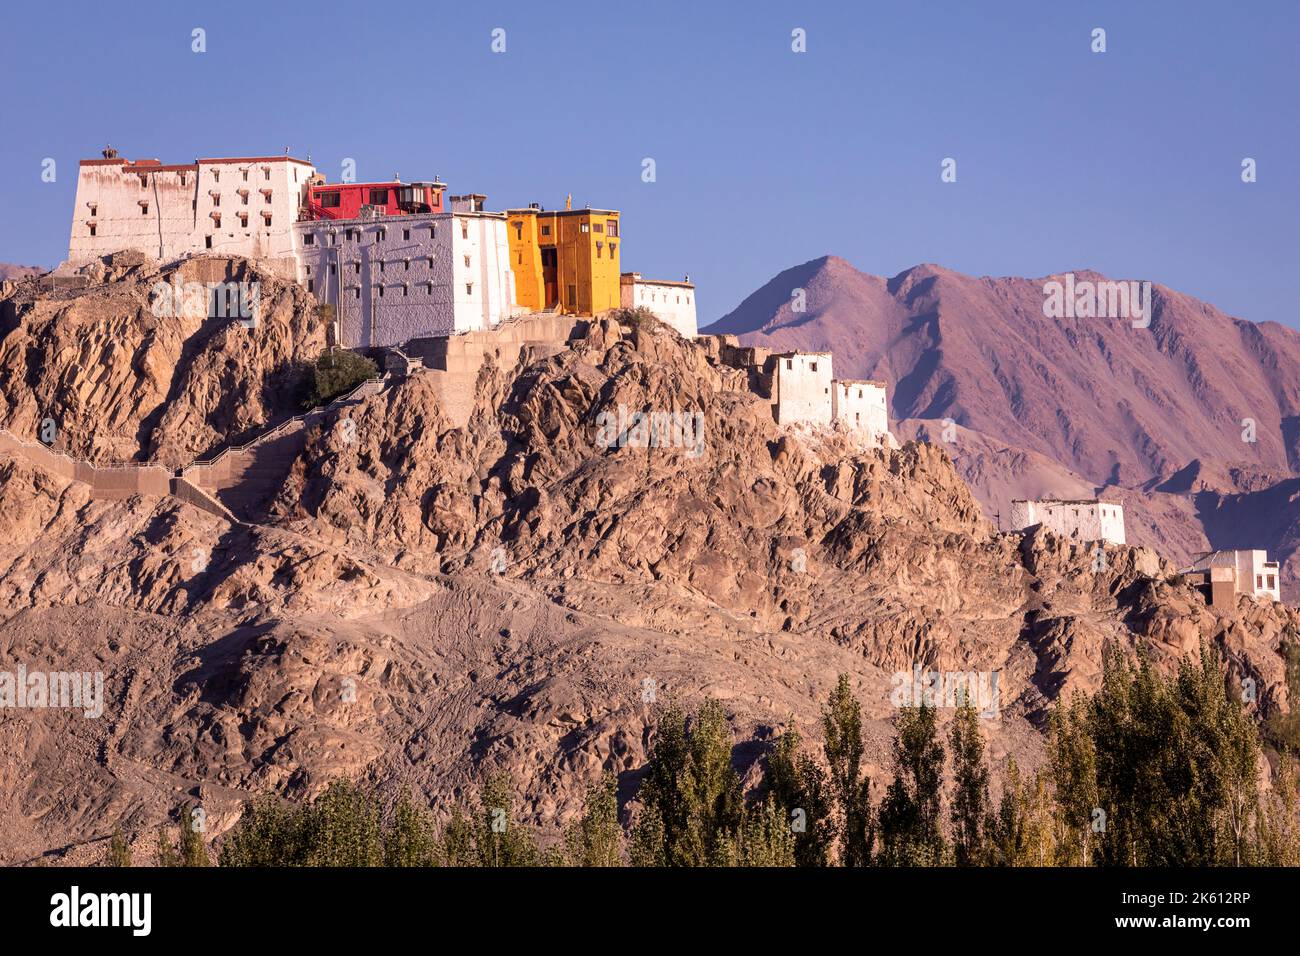 Stok Palace, Ladakh, India Stock Photo